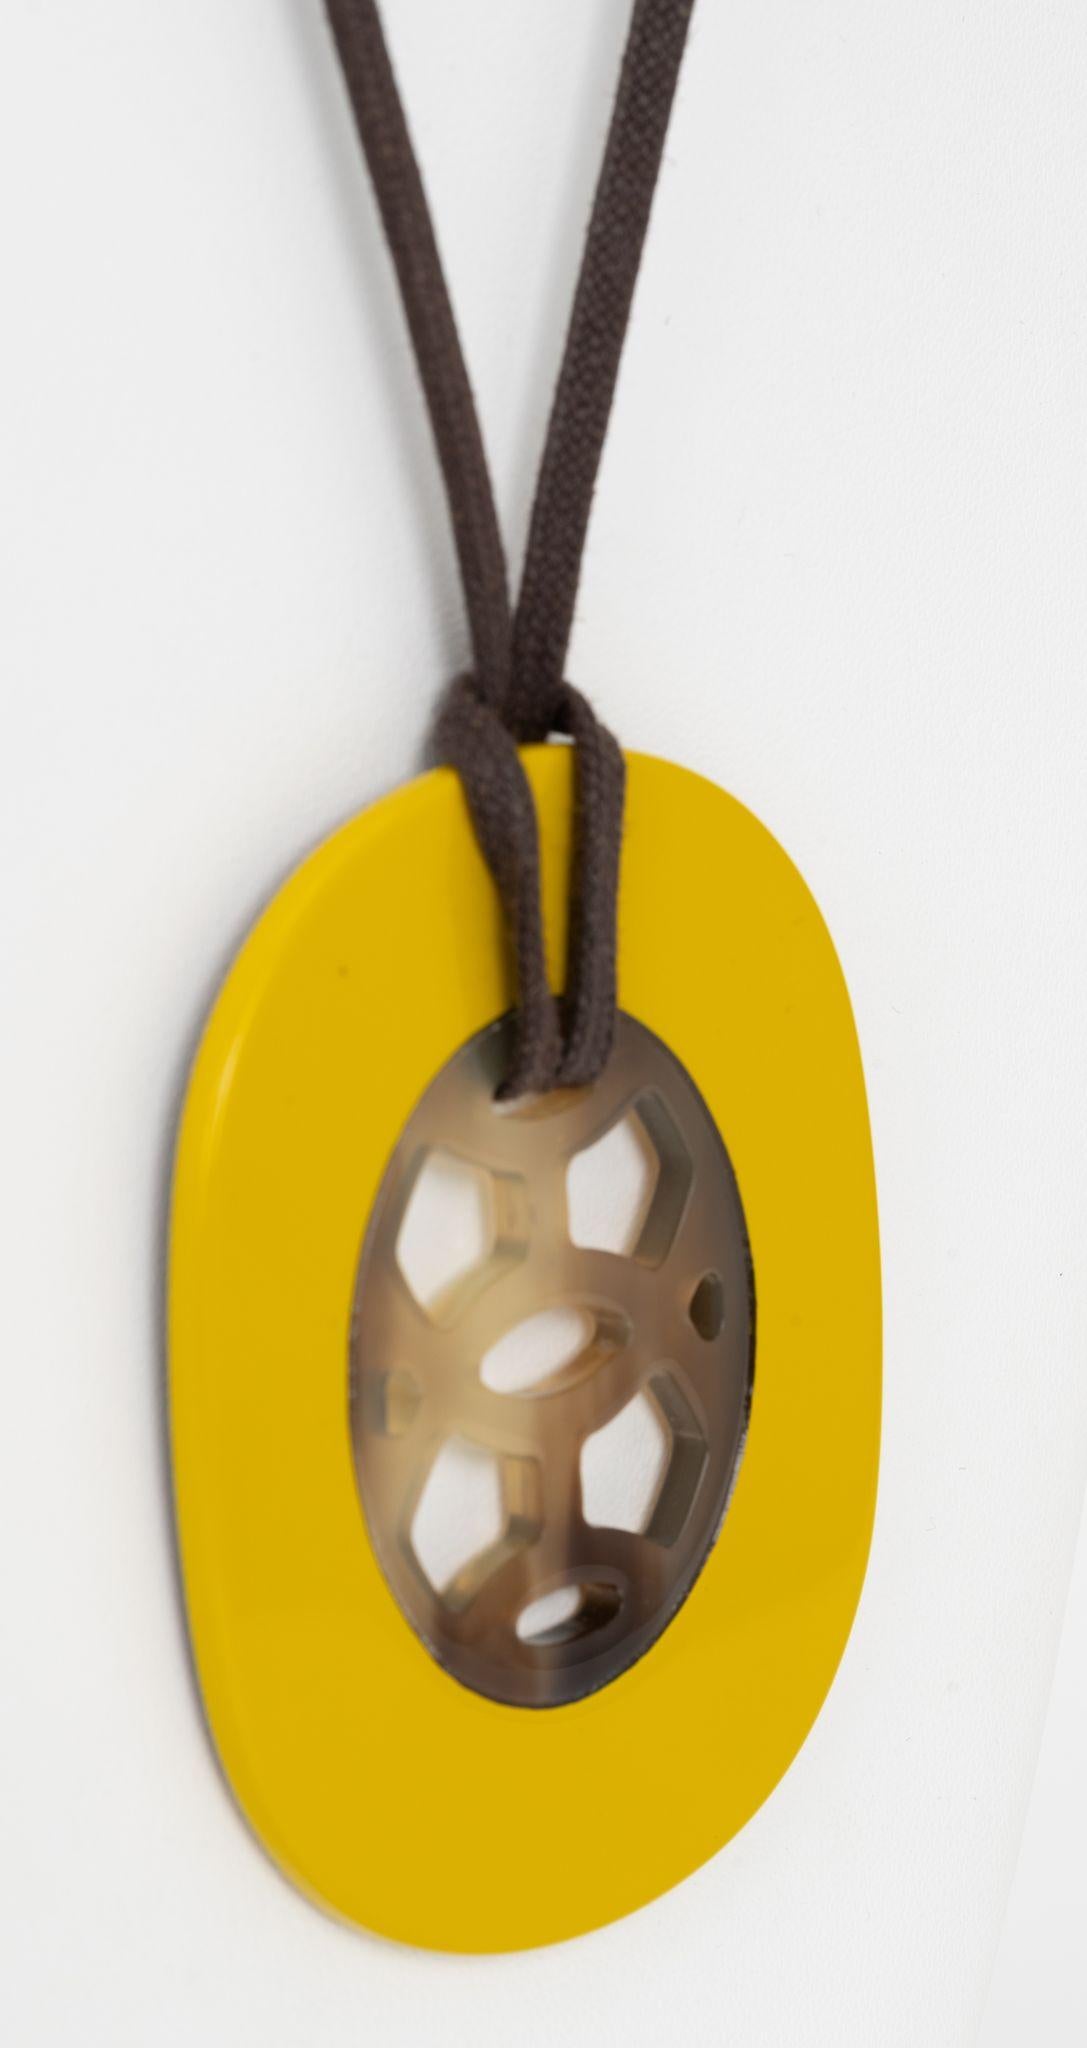 Le pendentif Hermès en corne de buffle est en bois laqué et monté sur un cordon réglable en coton ciré.
Pendentif 2,5